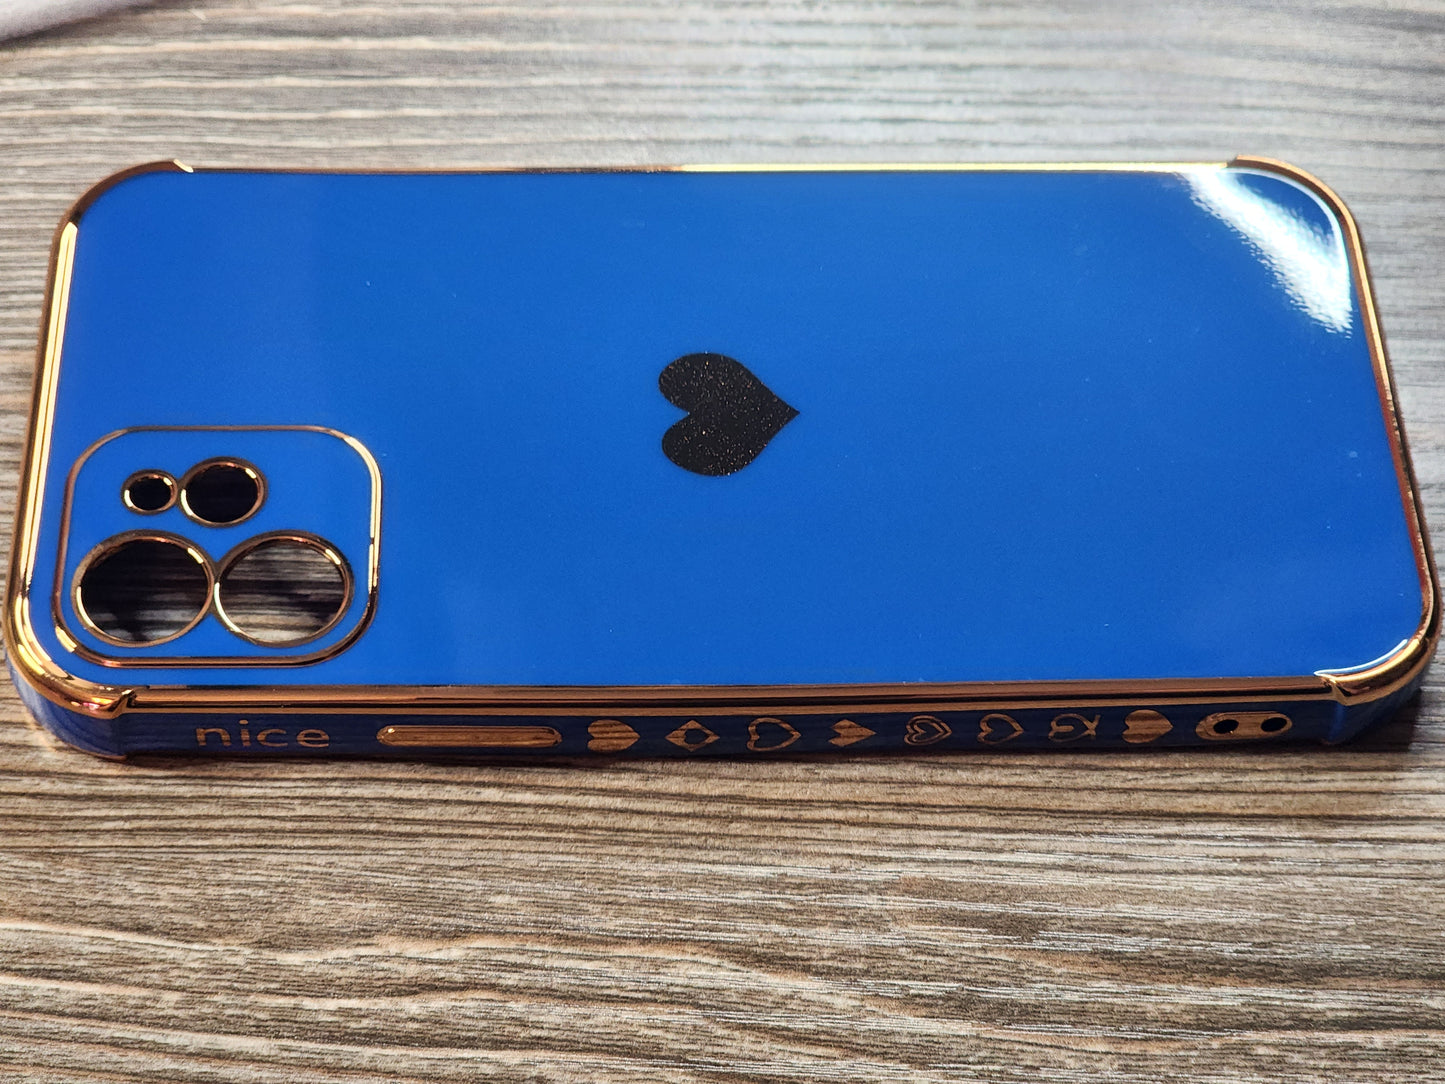 iPhone 11 6.1 inch Dark Blue